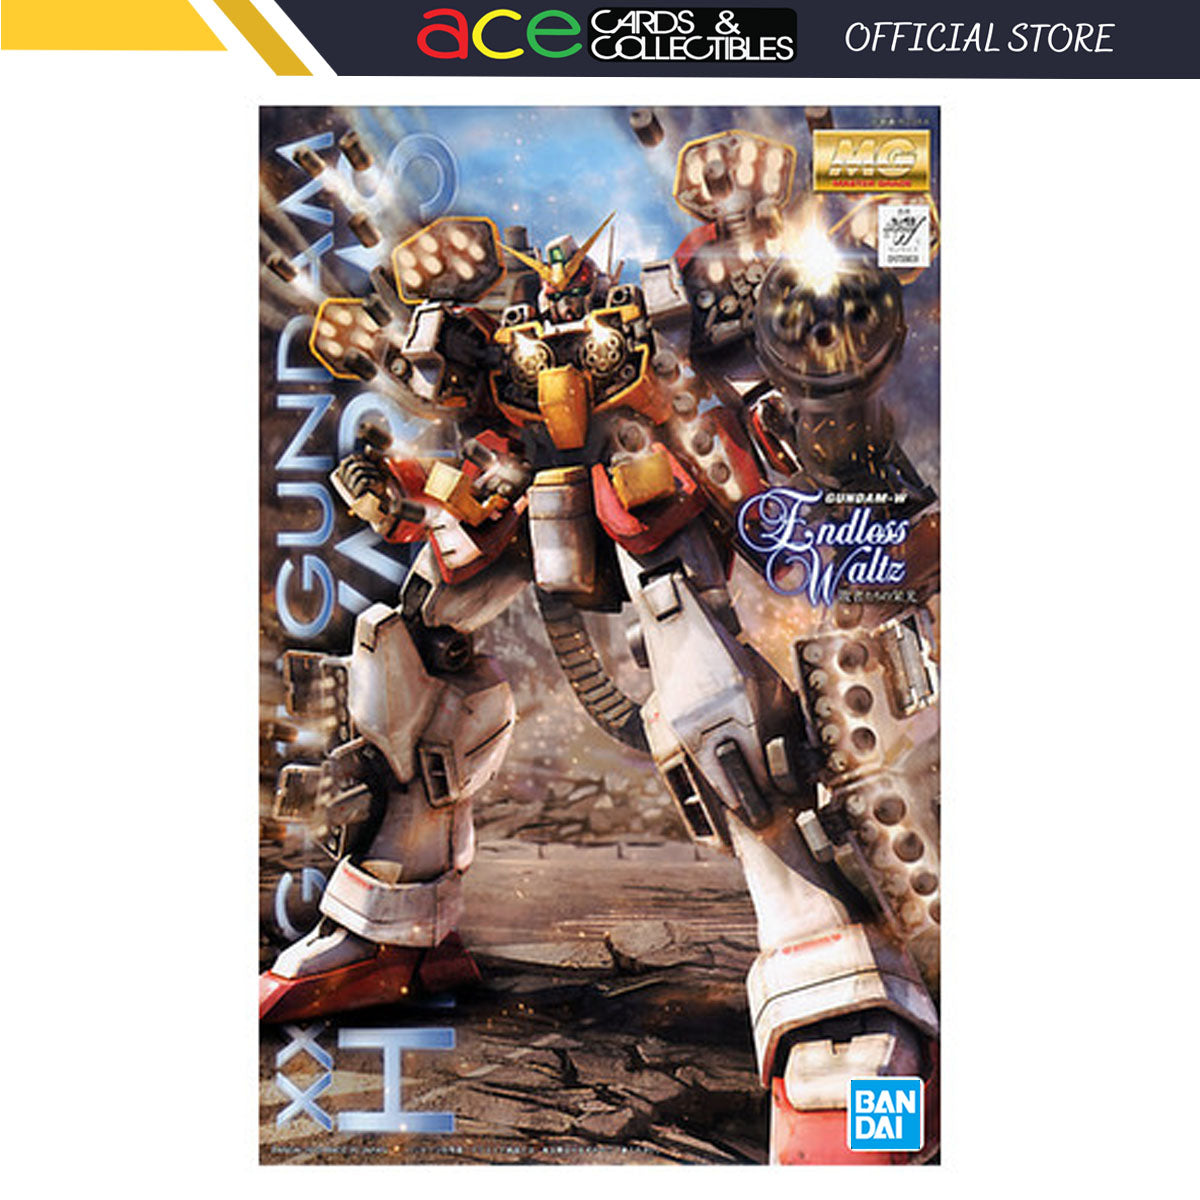 Gunpla 1/100 MG XXXG-01H Gundam Heavy Arms EW Ver.-Bandai-Ace Cards & Collectibles